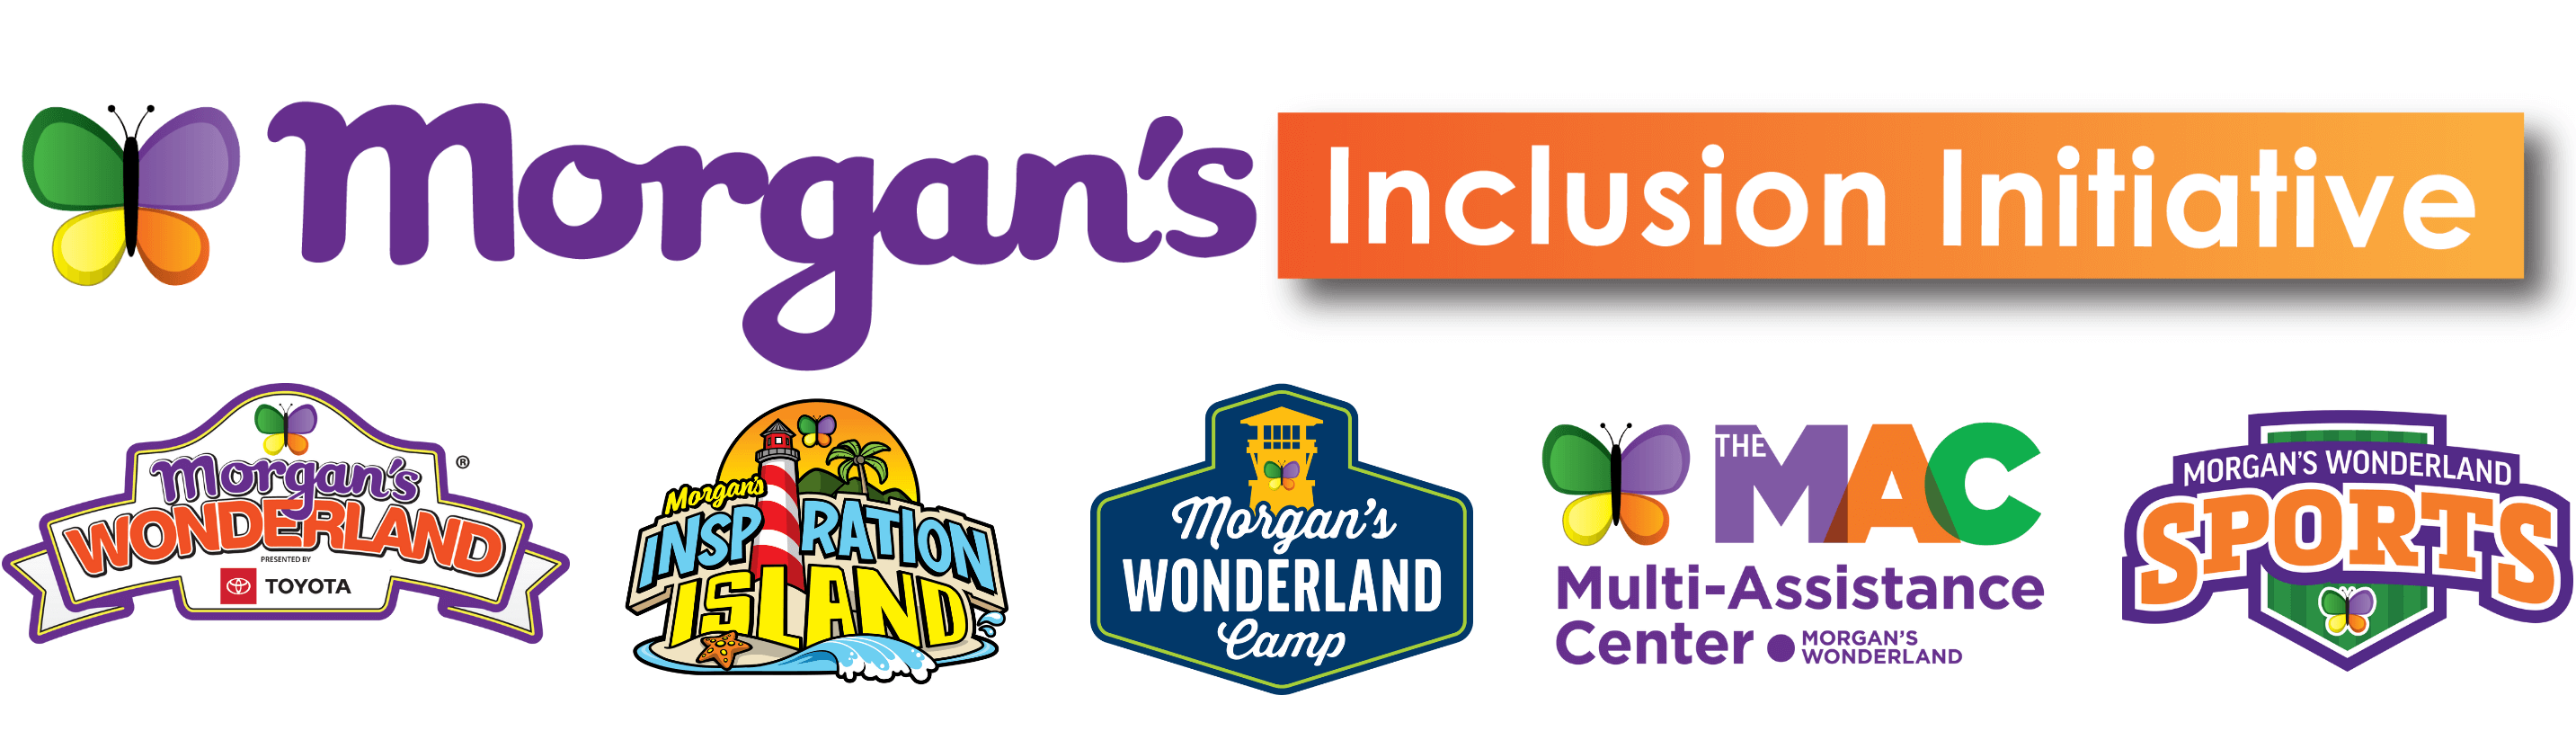 Morgan's Inclusion Initiative Logo